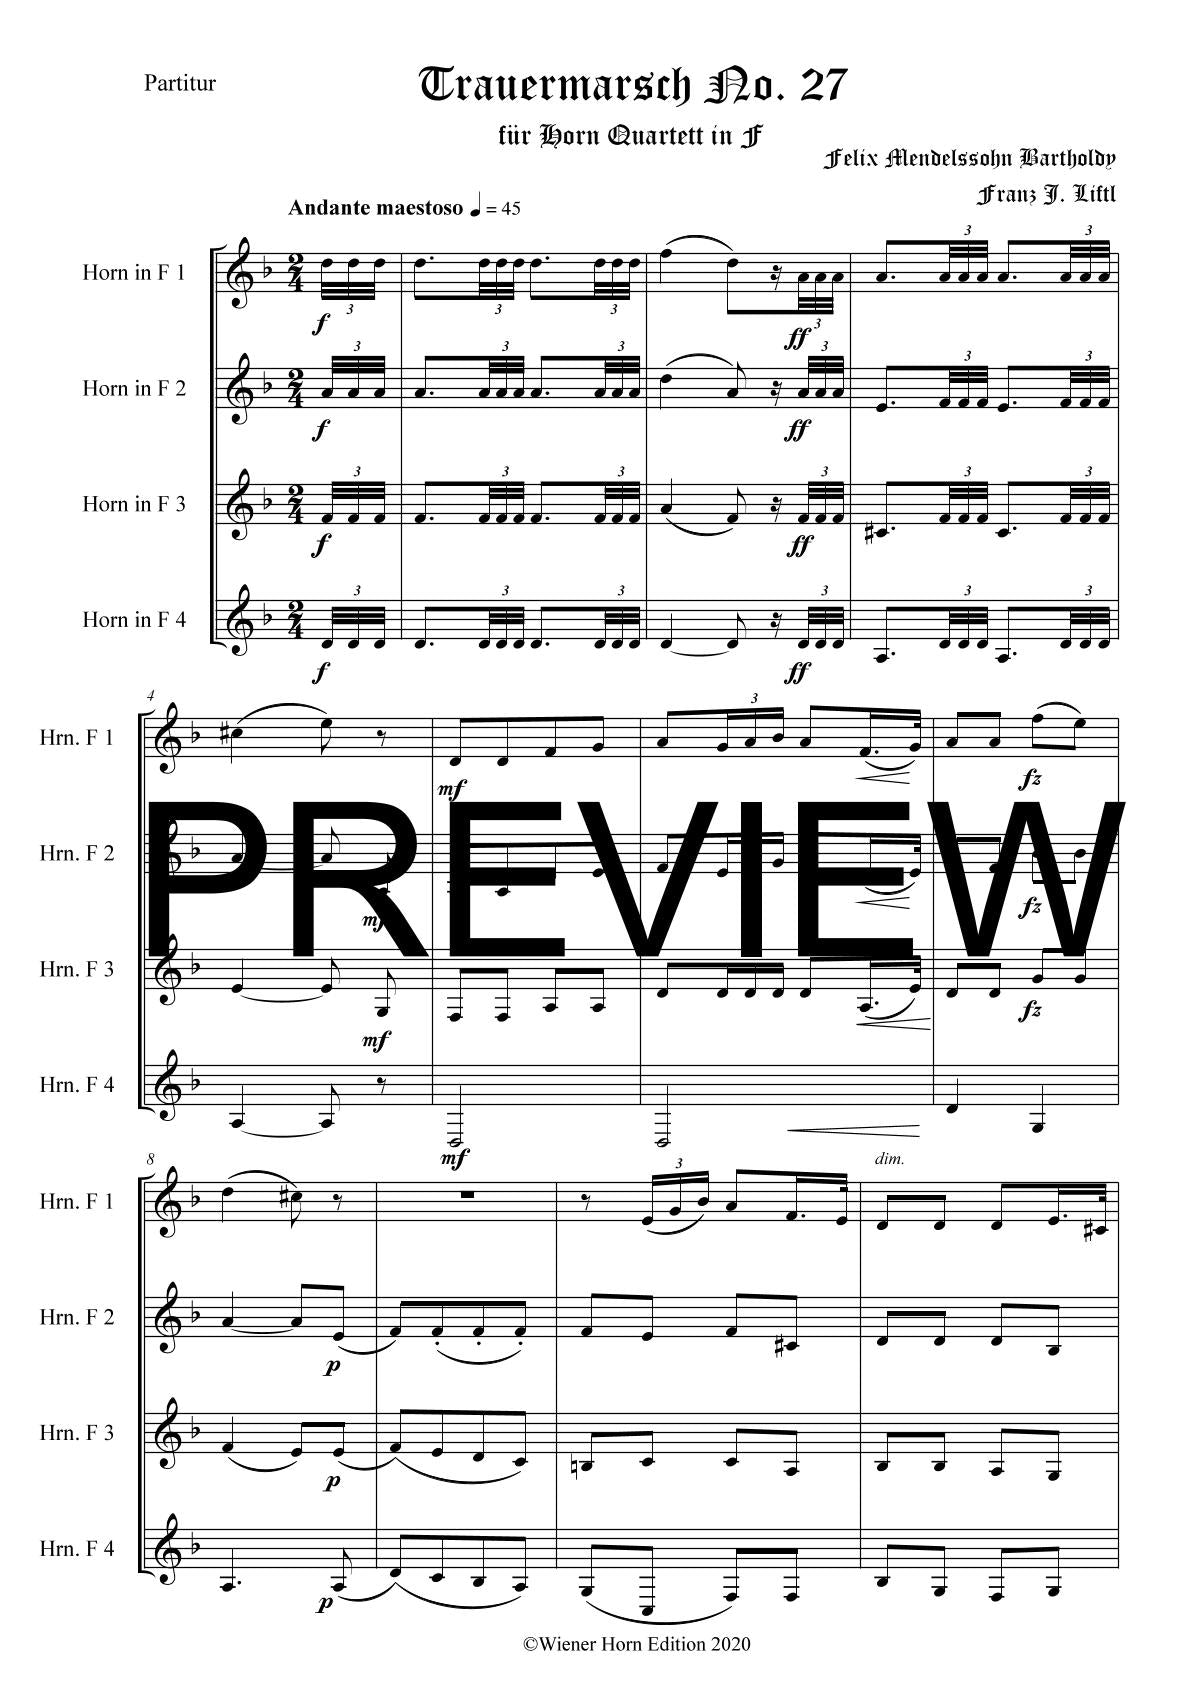 Lied ohne Worte No. 27 - Trauermarsch - Felix Mendelssohn Bartholdy - für Horn Quartett in F - Arr. Franz J. Liftl